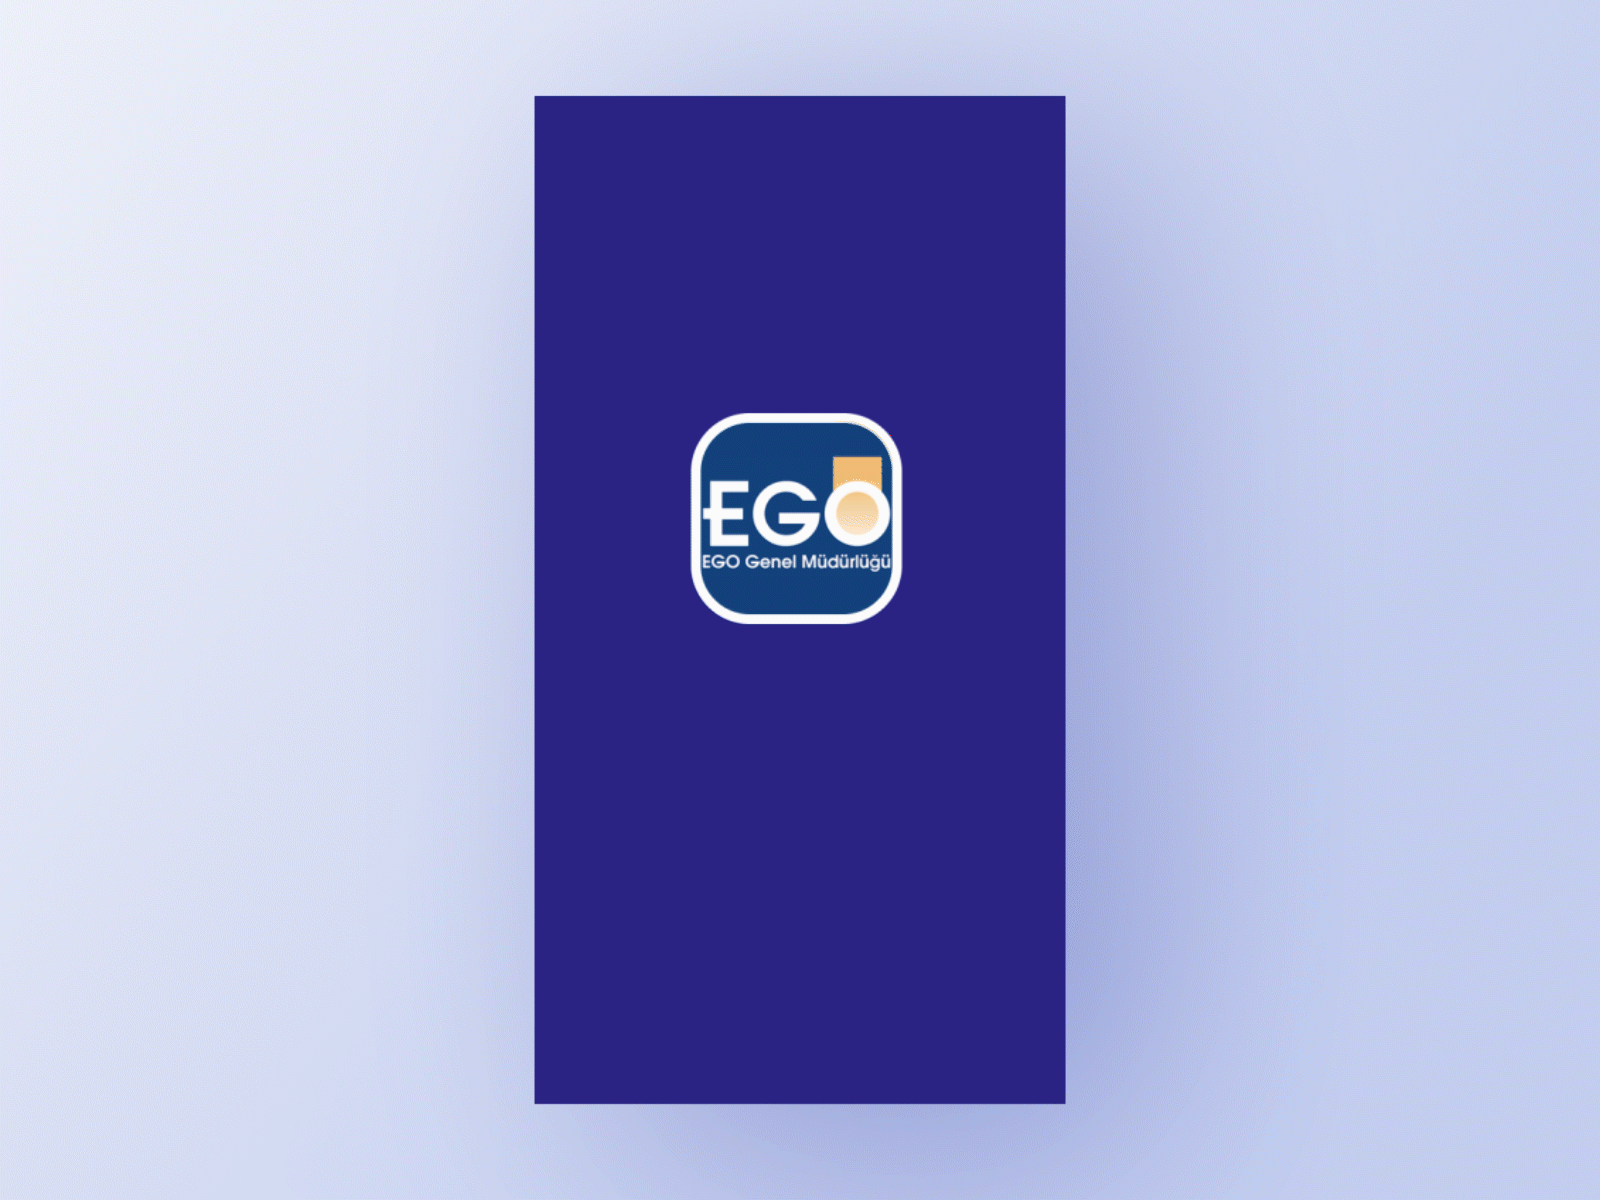 Ego Cepte App Redesign